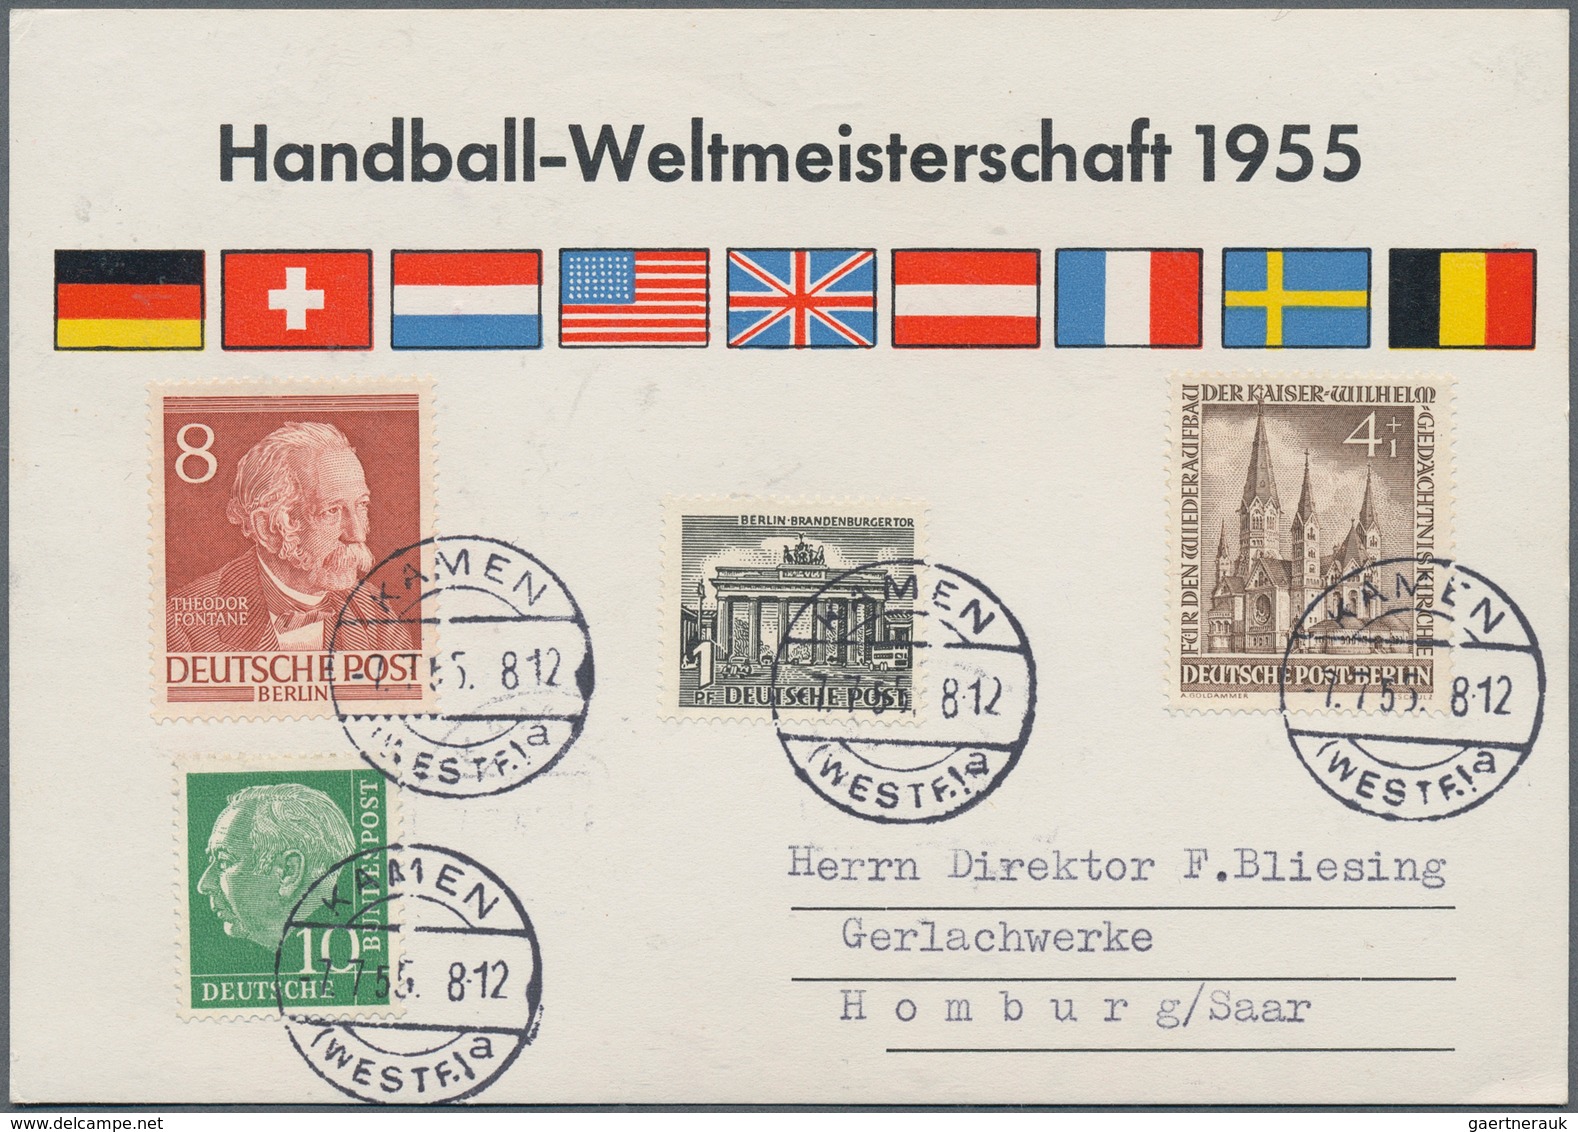 Thematik: Sport-Handball / Sport-handball: 1955, Saarland. Handball World Championship, Germany. Wet - Hand-Ball